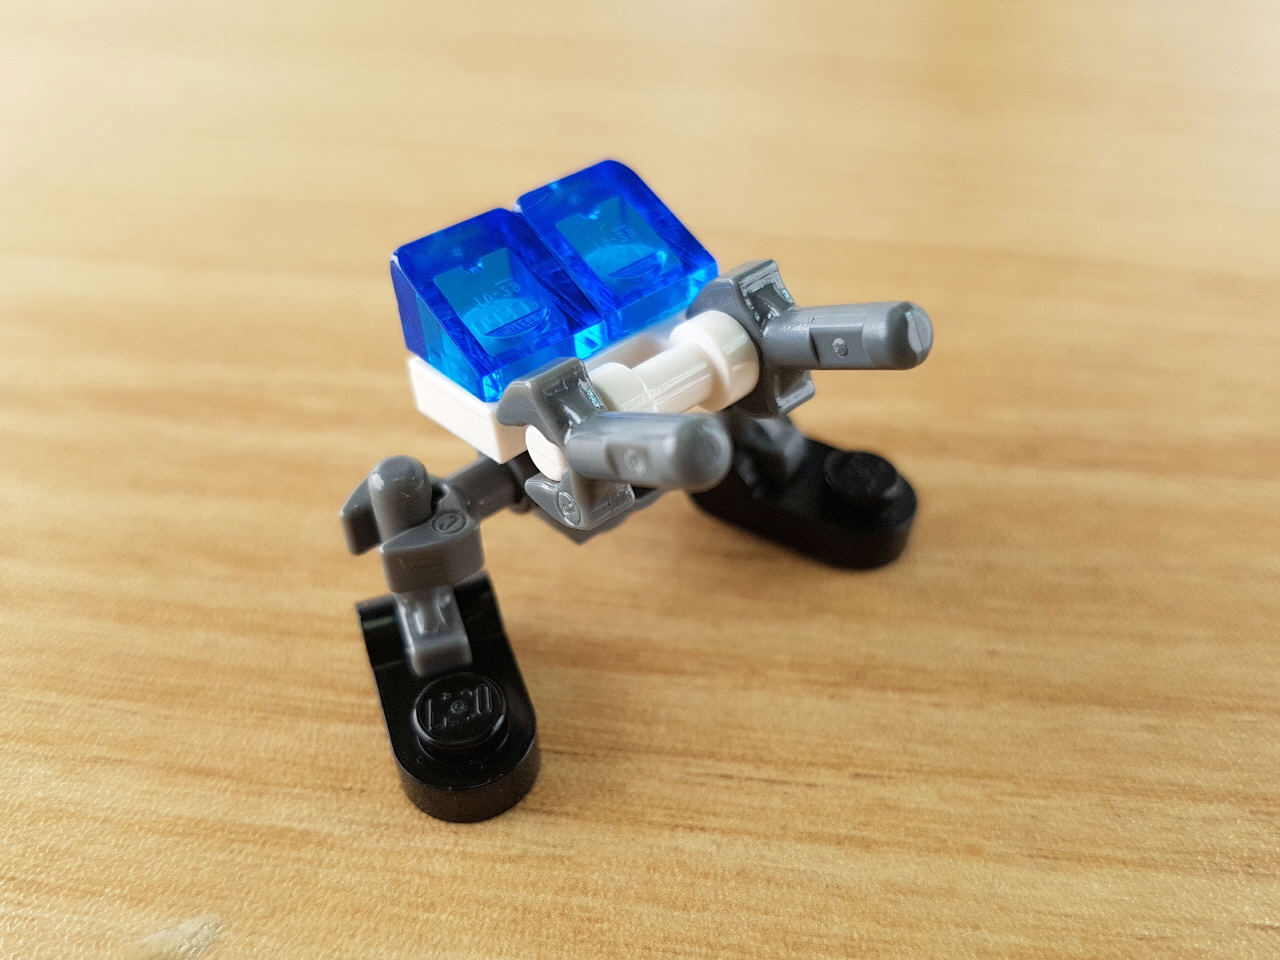 13개 부품으로 만드는 초미니 경찰로봇 - 미니캅 1 - 변신,변신로봇,레고변신로봇